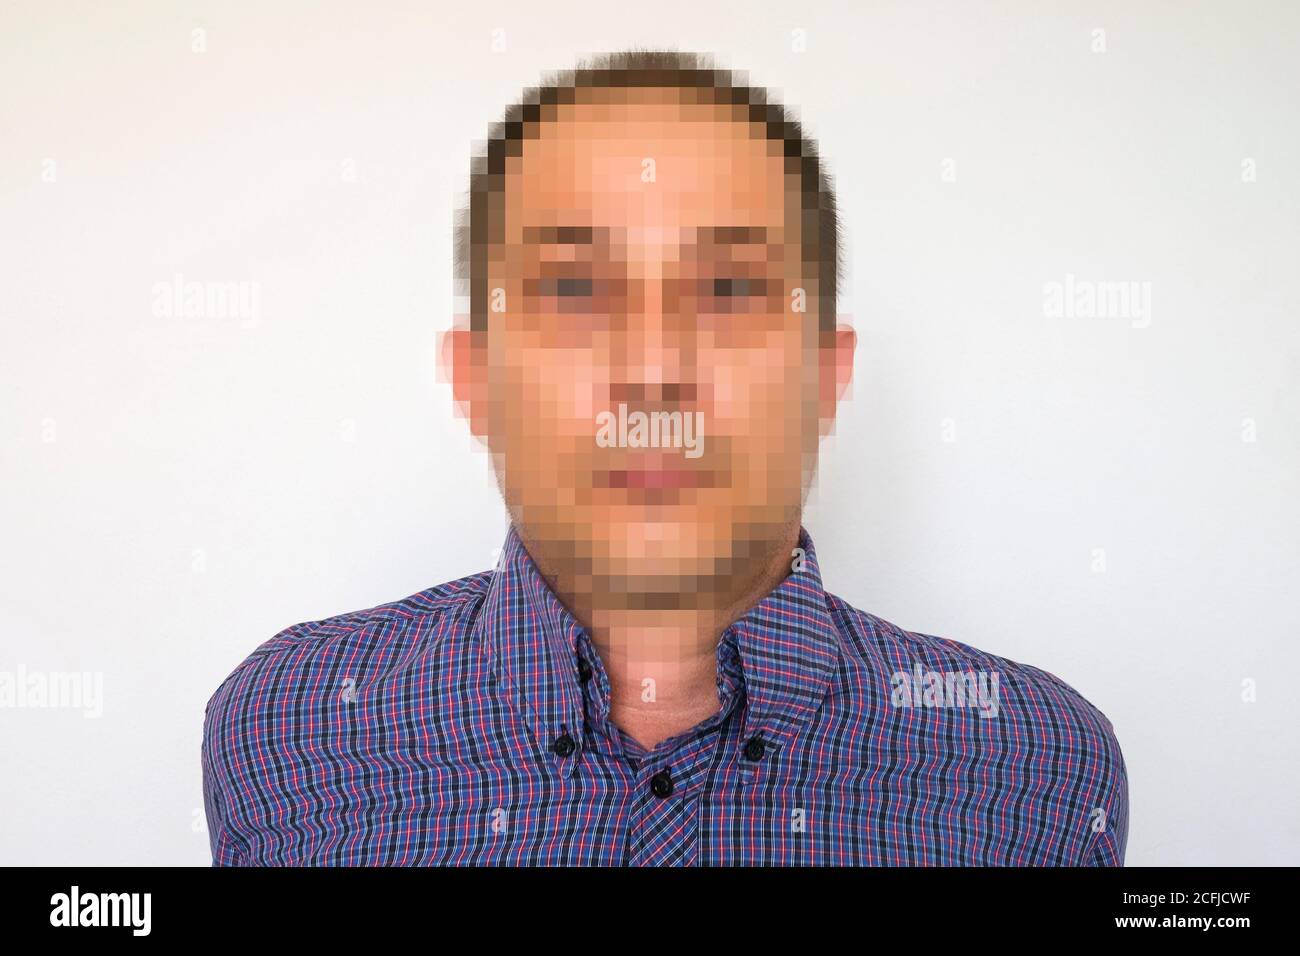 Portrait d'un homme avec un visage pixélisé dans un concept De l'anonymat ou du RGPD Banque D'Images